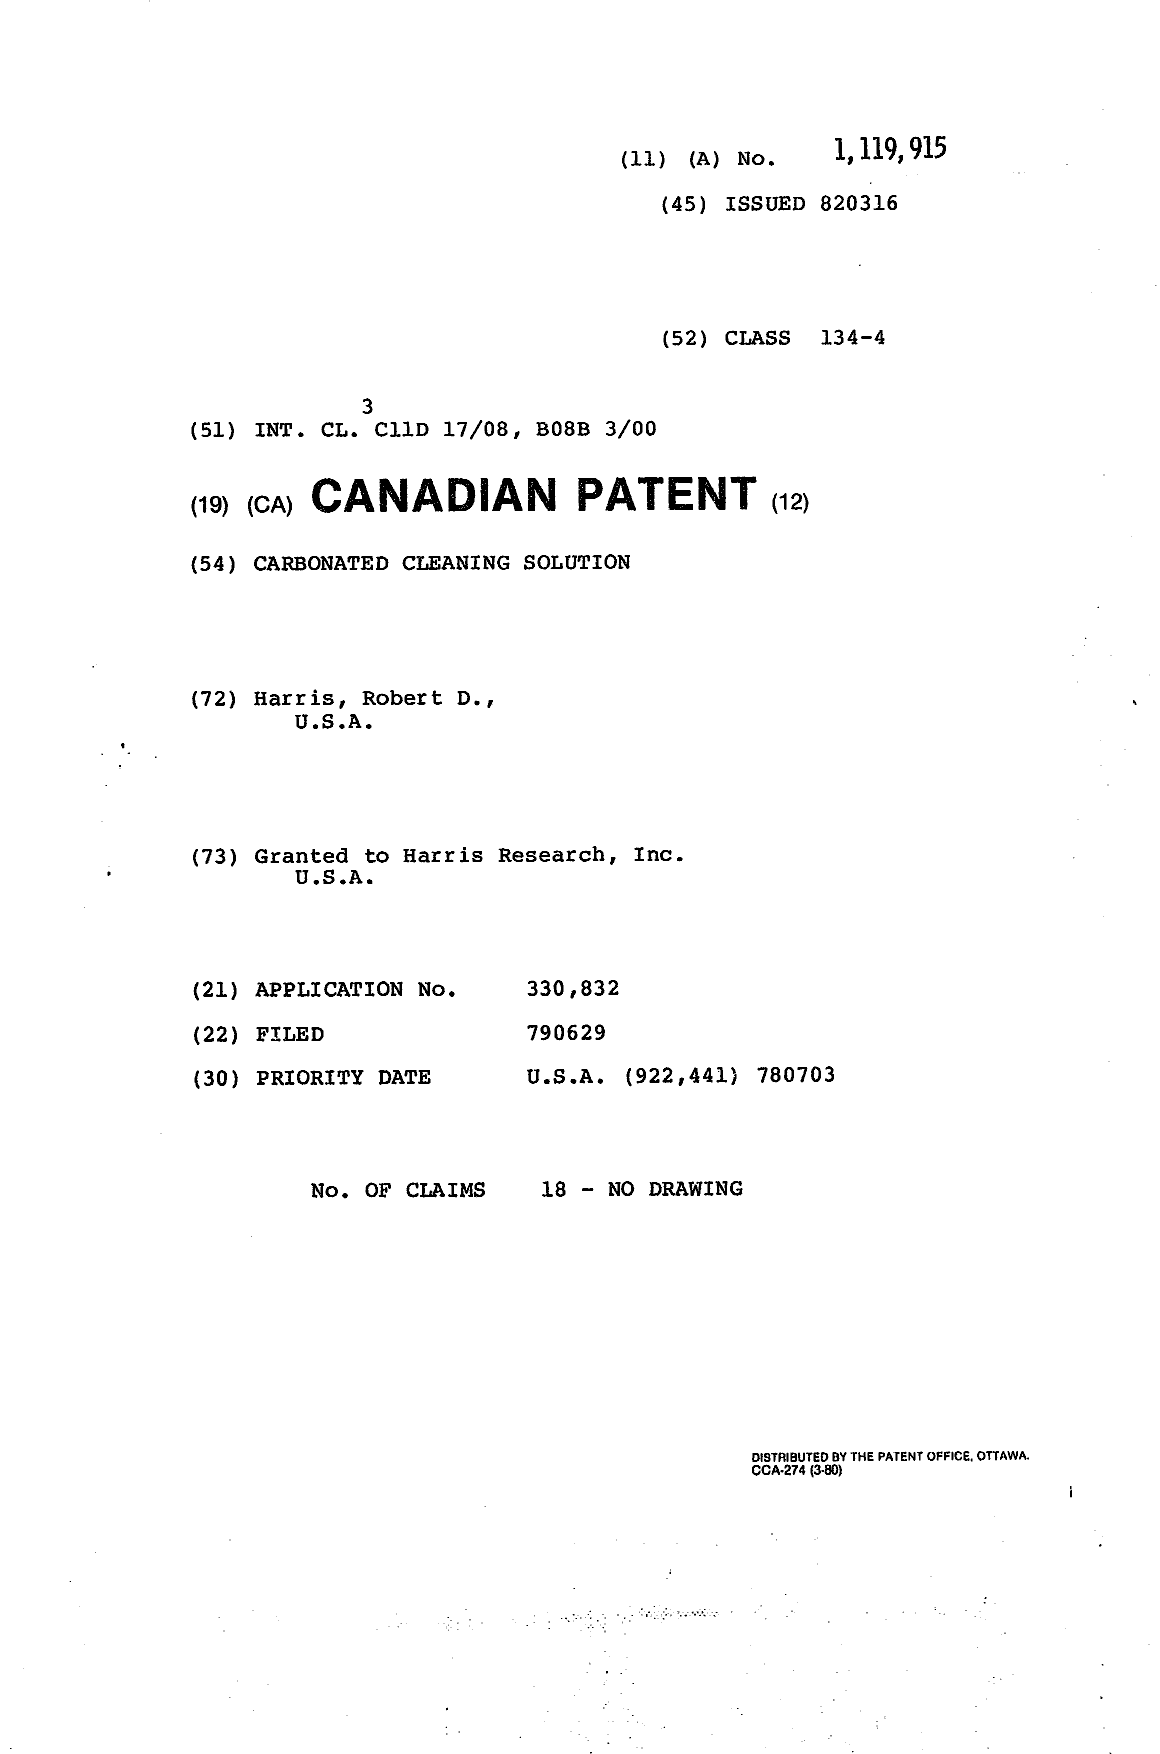 Document de brevet canadien 1119915. Page couverture 19940202. Image 1 de 1